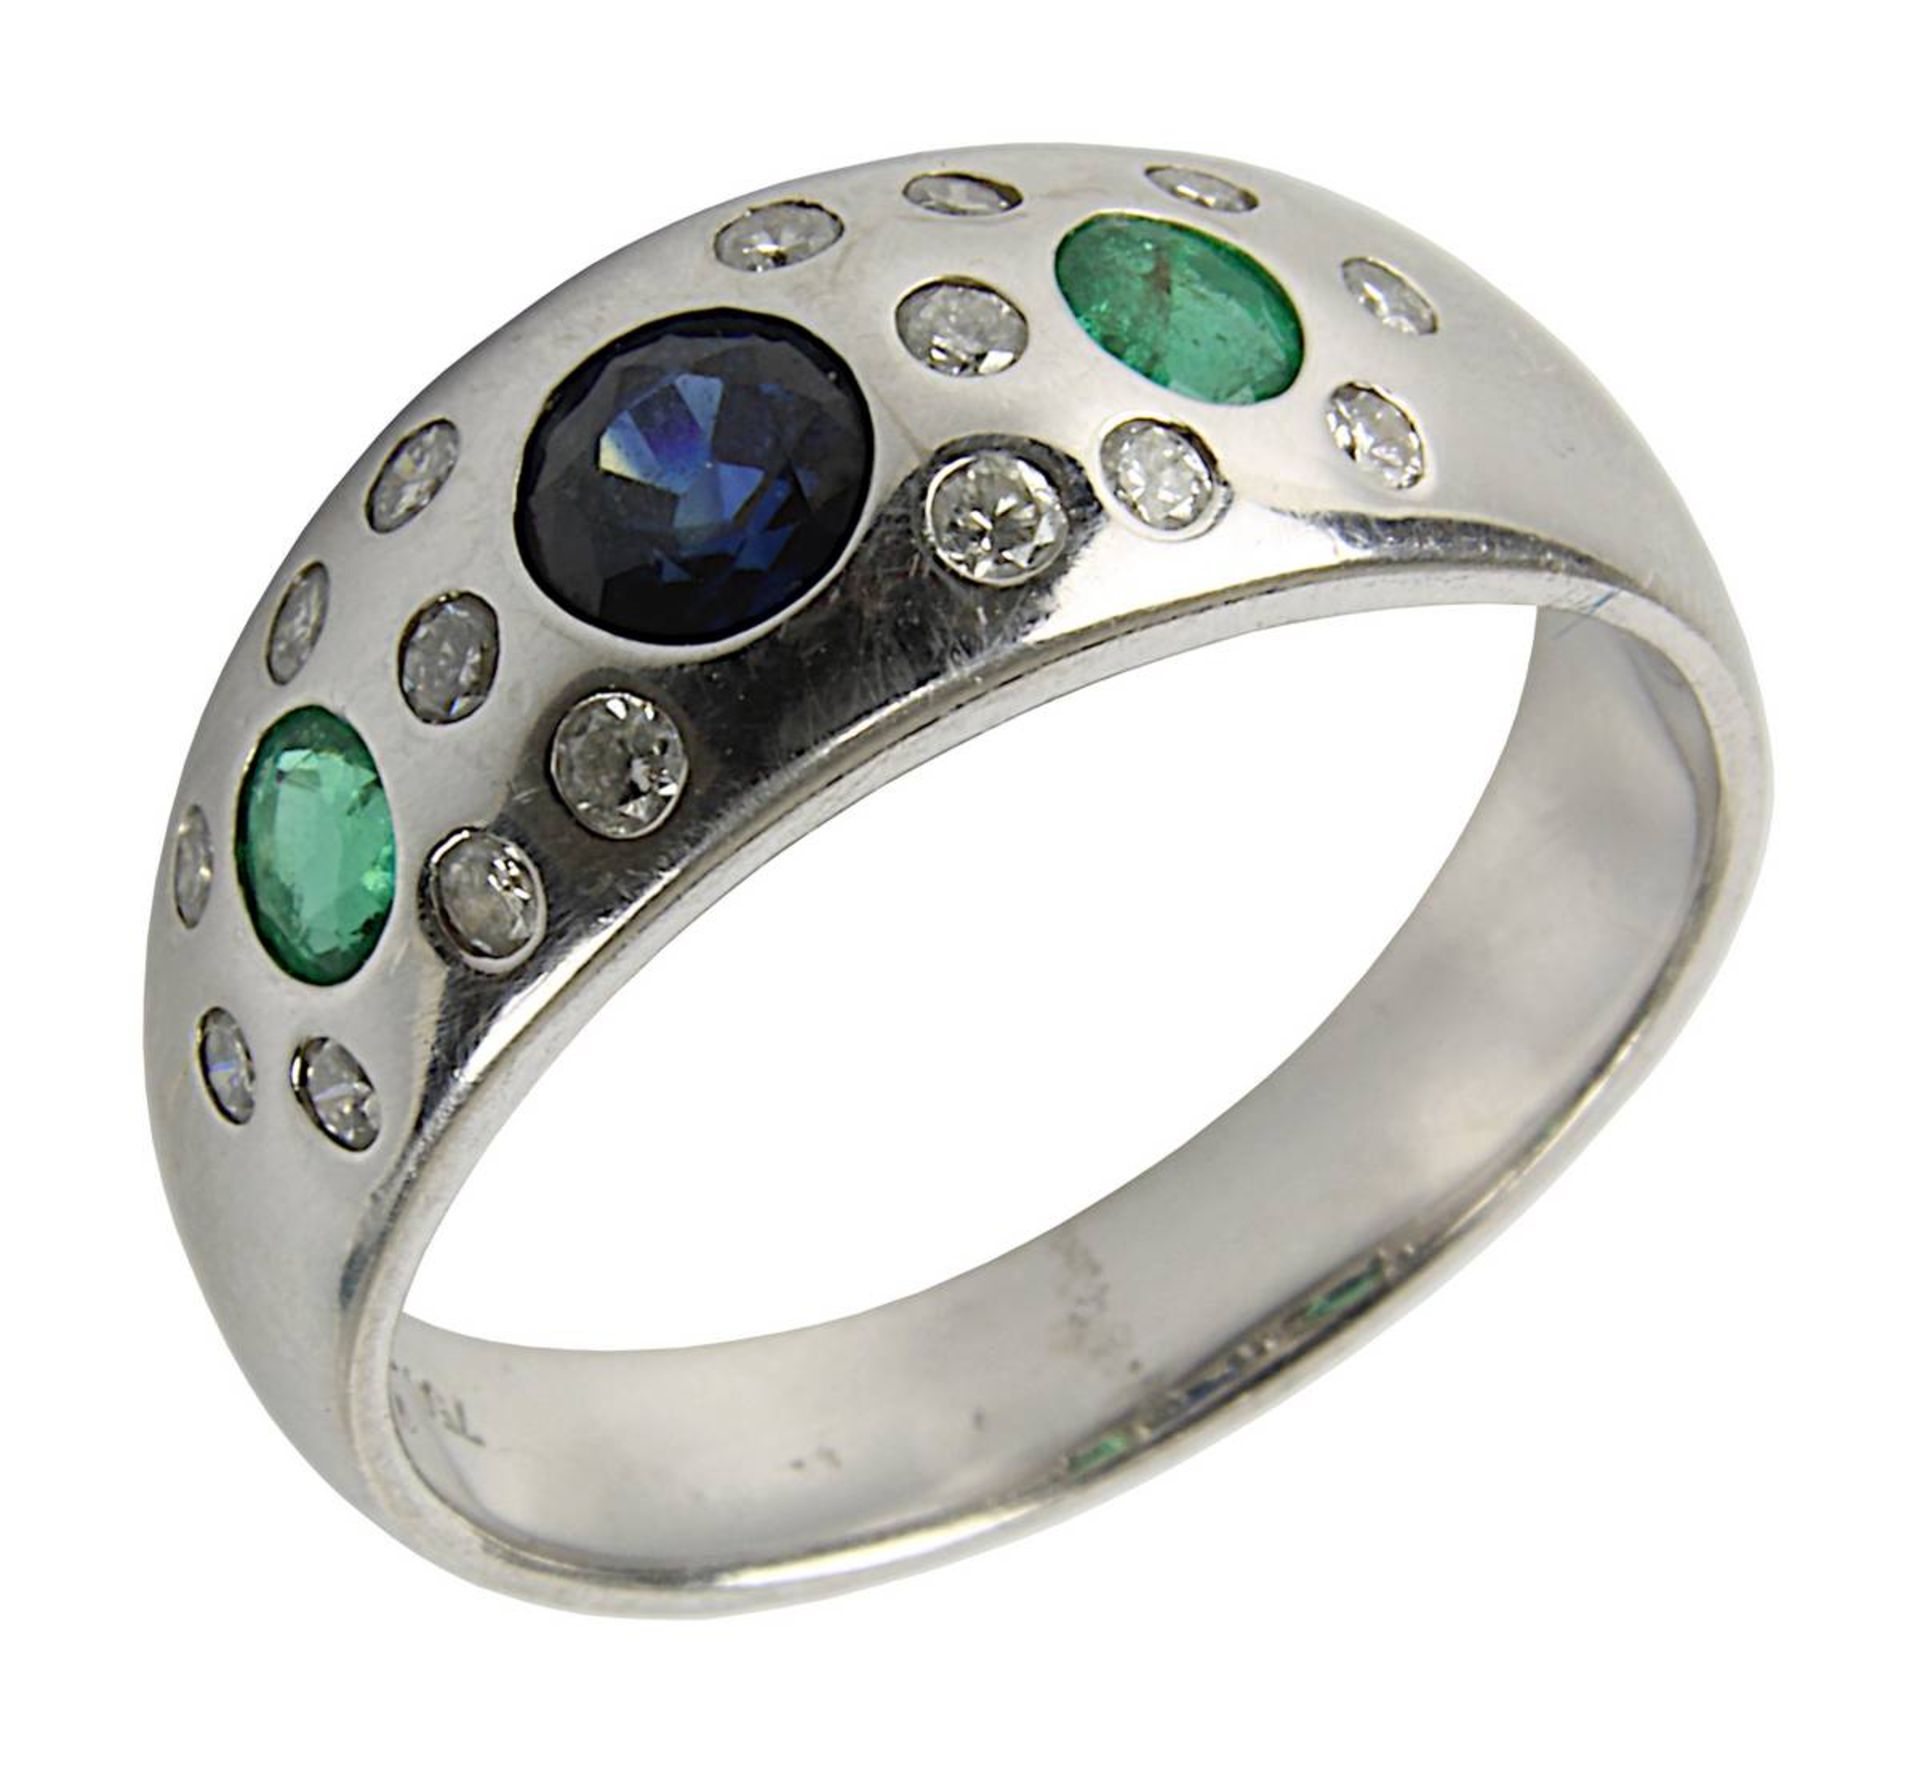 Weißgold-Ring mit Saphir, Smaragden und Brillanten, Ringschiene rhodiniert, gepuntzt 750, Ringkopf